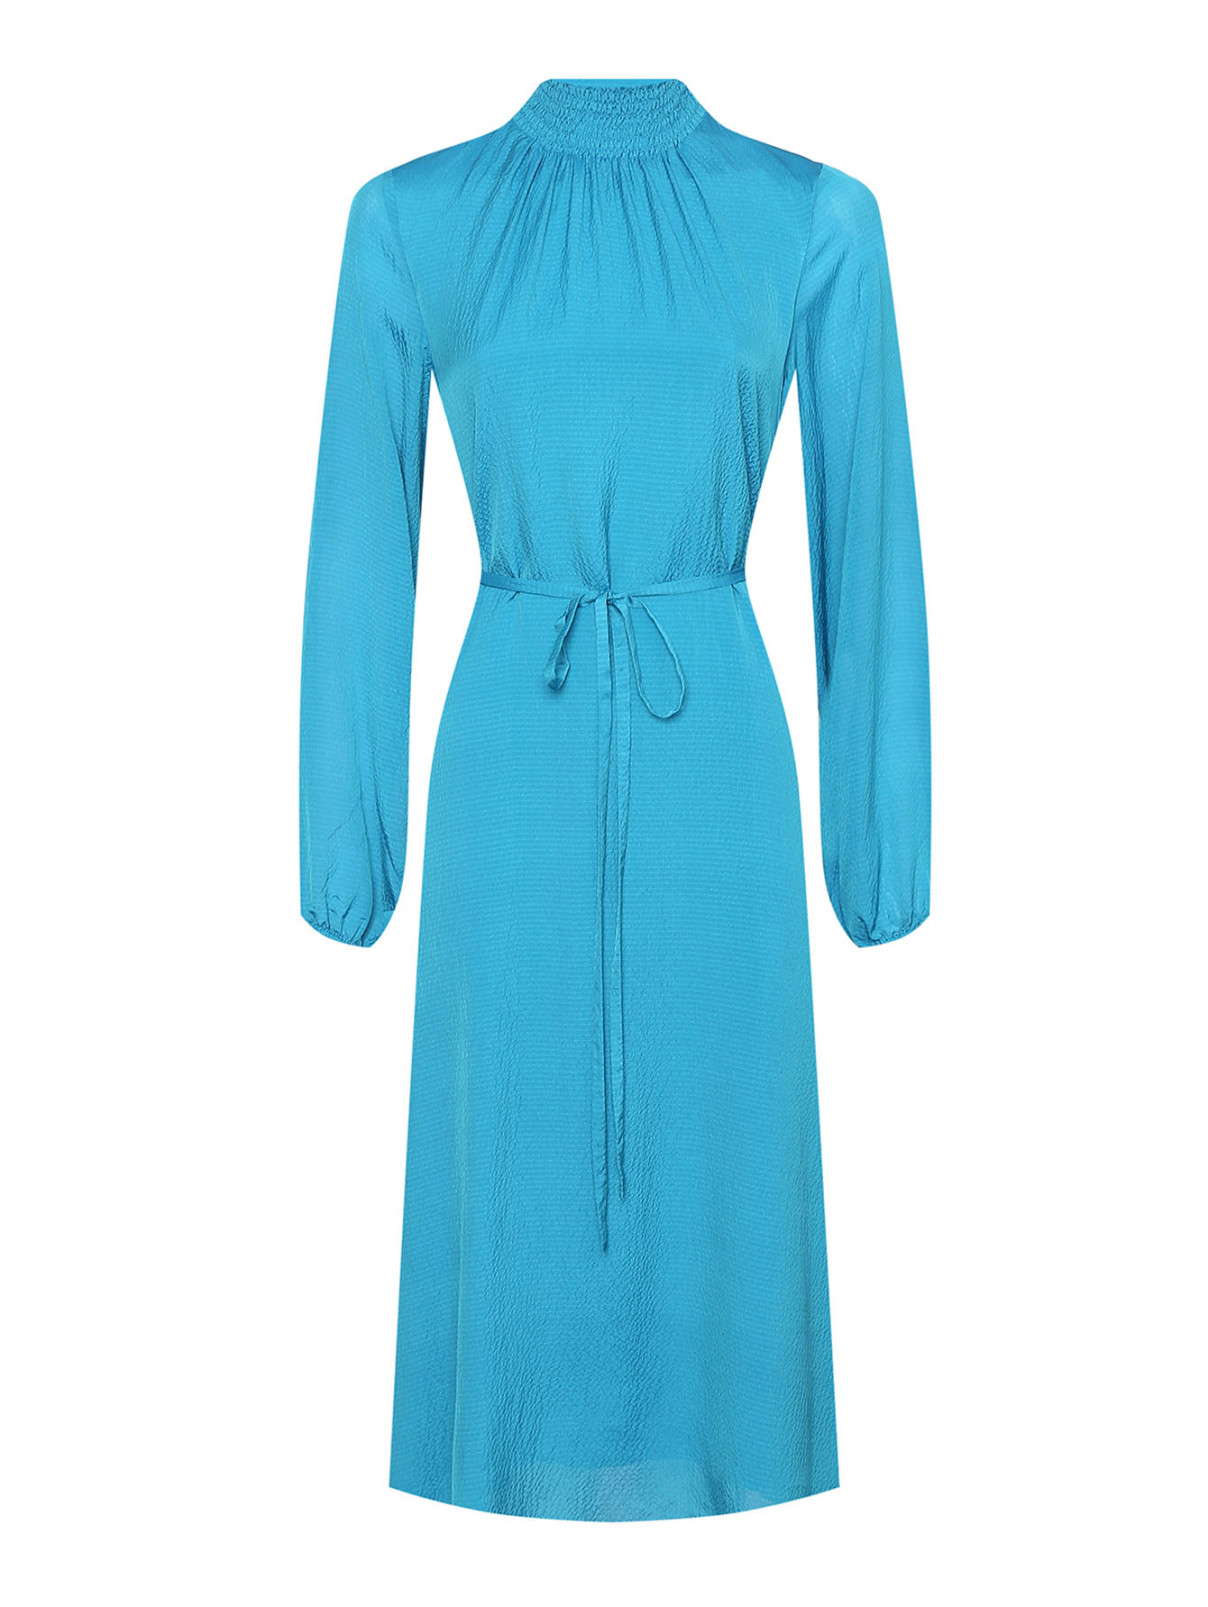 Платье из вискозы и шелка свободного кроя Essentiel Antwerp  –  Общий вид  – Цвет:  Синий